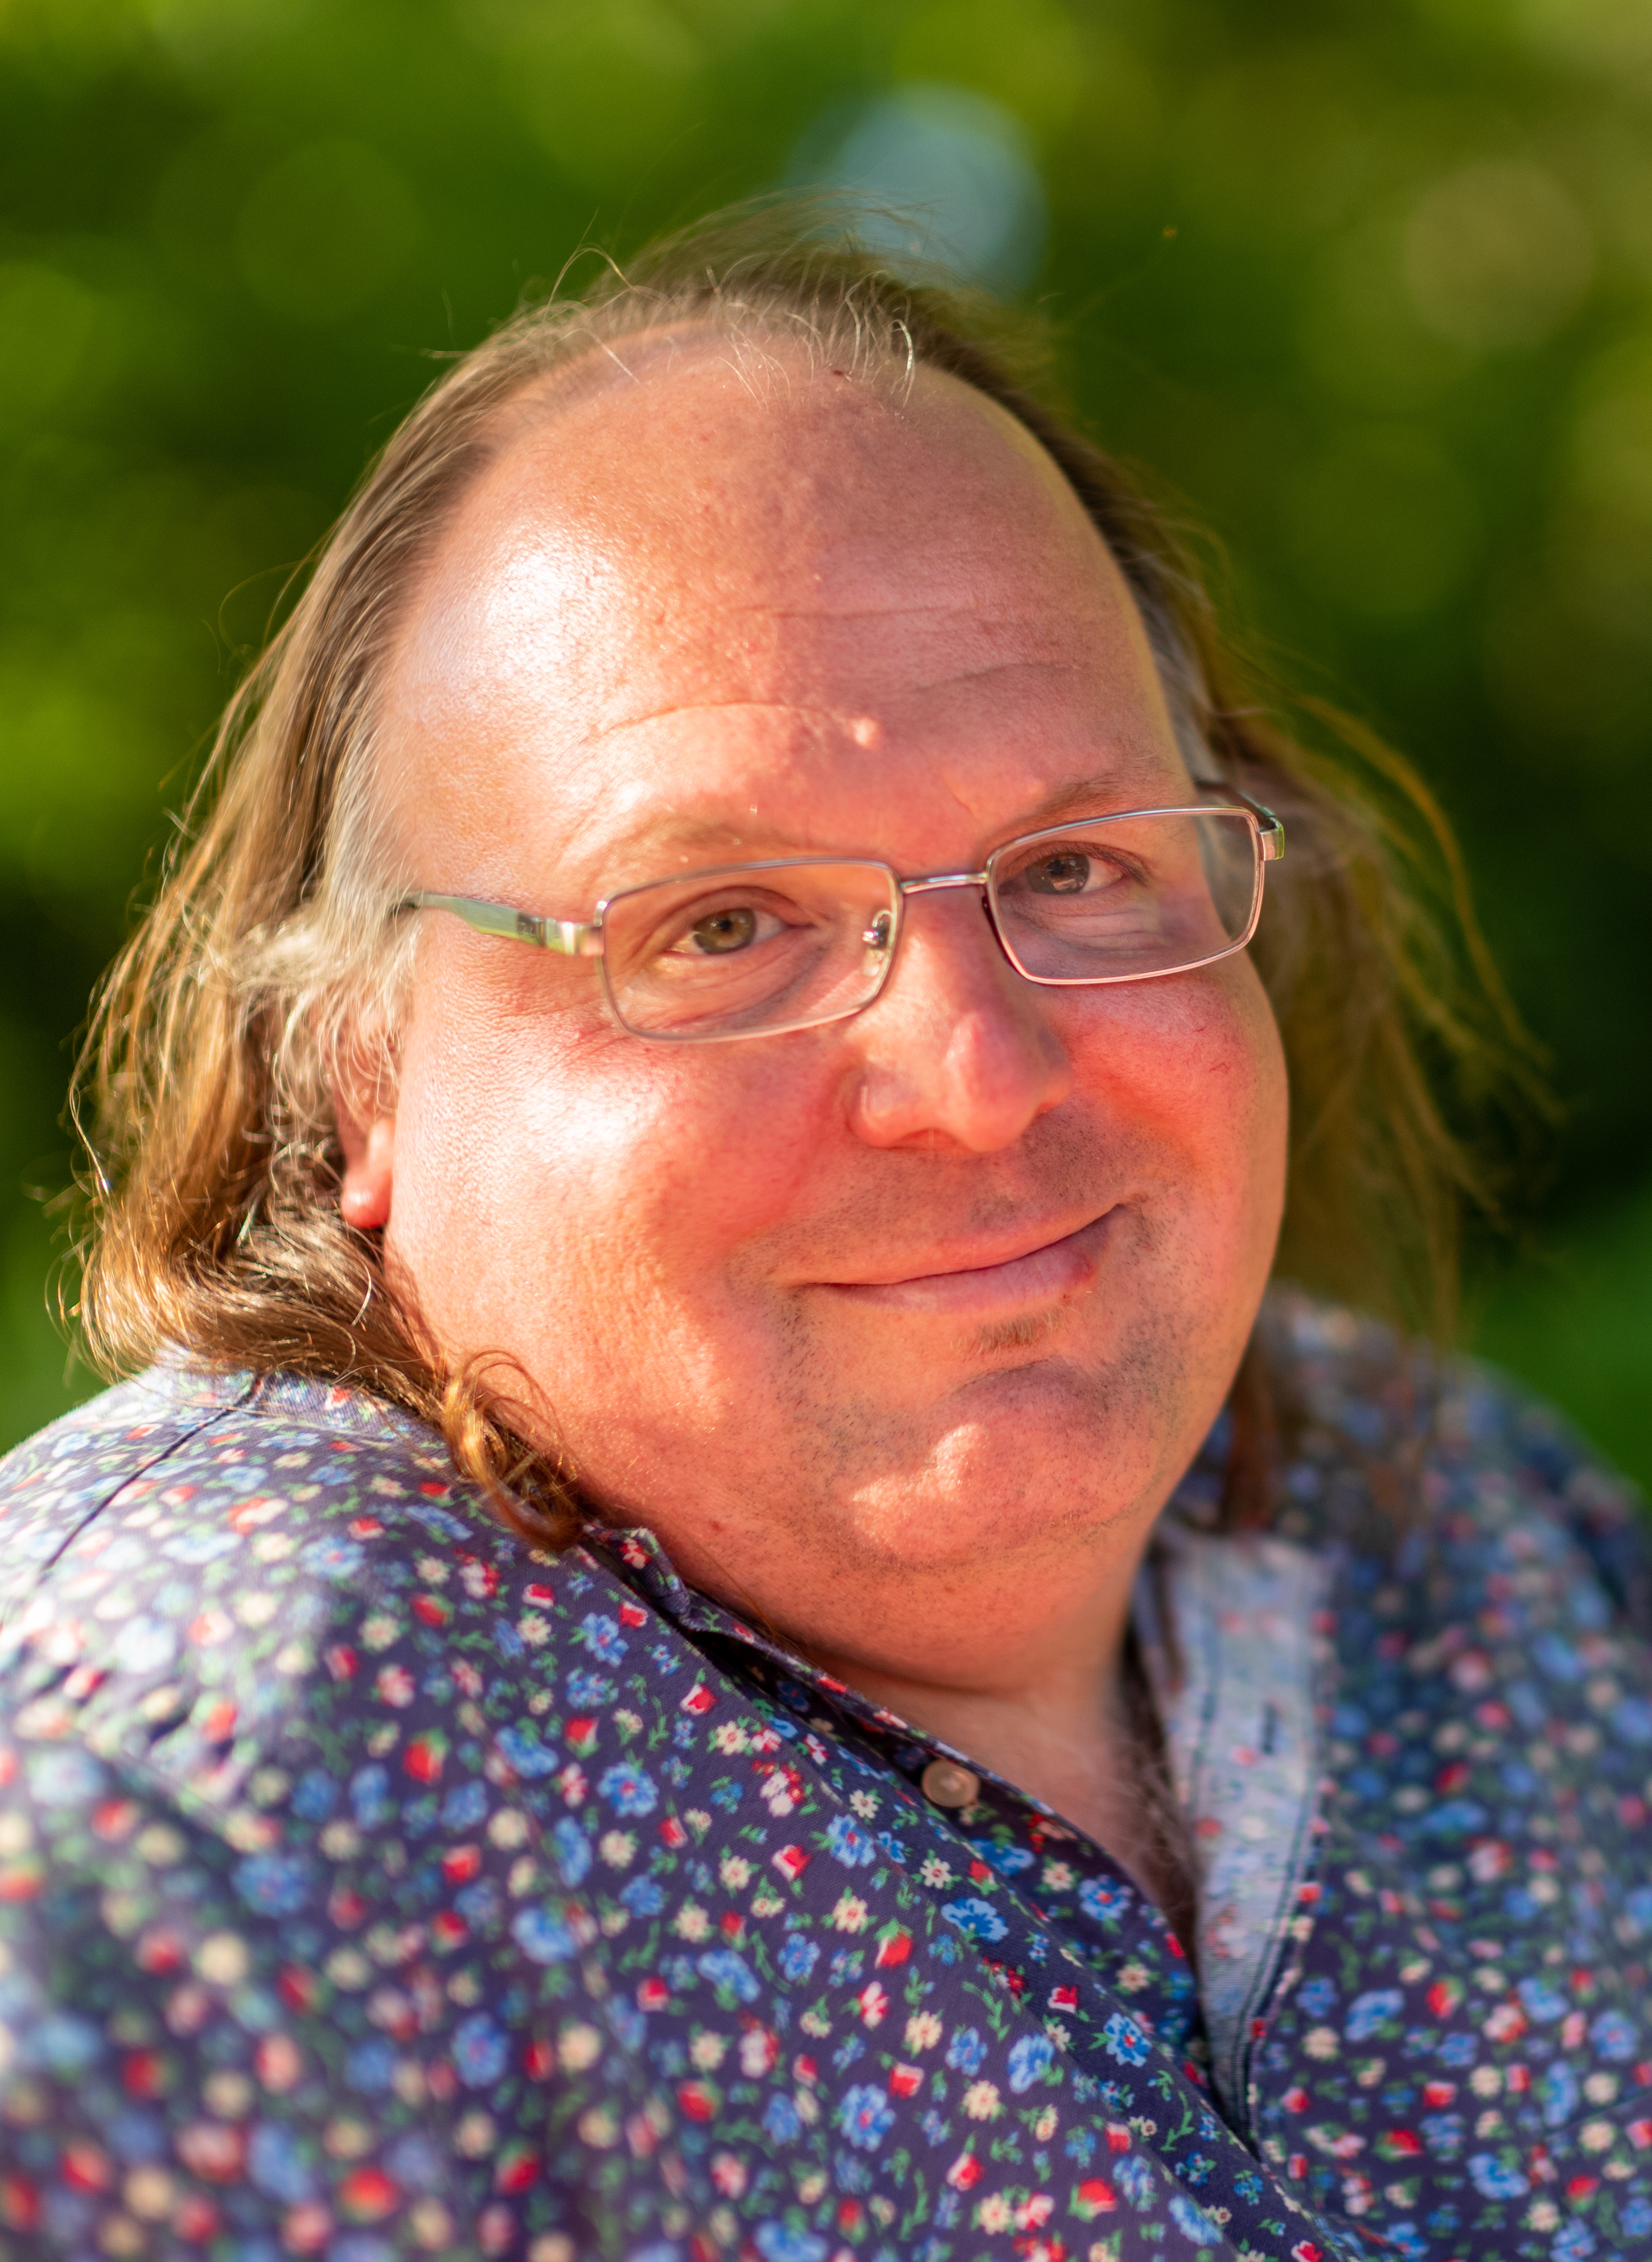 auteur Ethan Zuckerman de la citation Lorsque vous vous inscrivez à Facebook, le service recherche d'abord les mentions de votre nom et vous suggère de vous lier d'amitié avec quiconque vous a mentionné dans ses messages. Il demande ensuite d'accéder à votre compte de messagerie afin que vous puissiez vous connecter avec toute personne avec qui vous correspondez régulièrement.